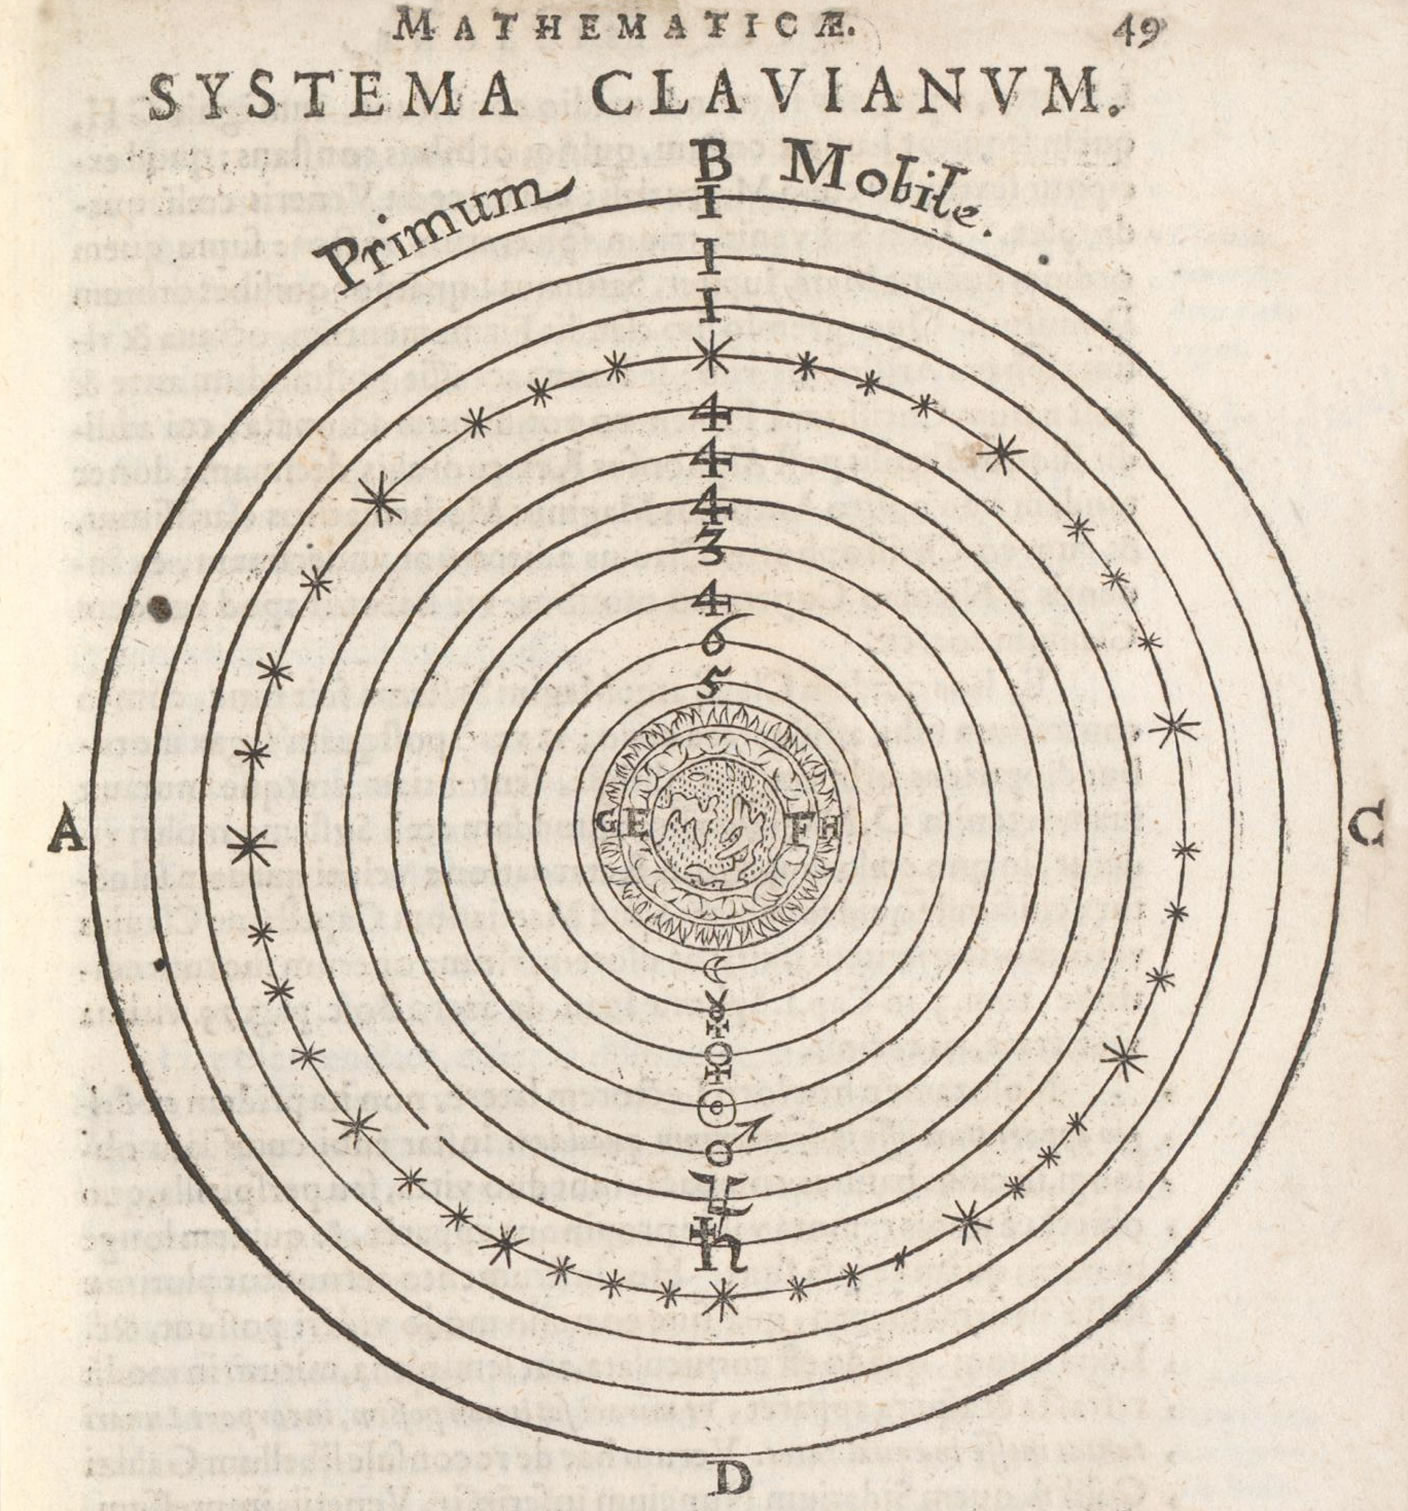 Christoph Scheiner, Disquisitiones mathematicae, 1614 Alte und Seltene Drucke Rar_4325, e-rara.ch